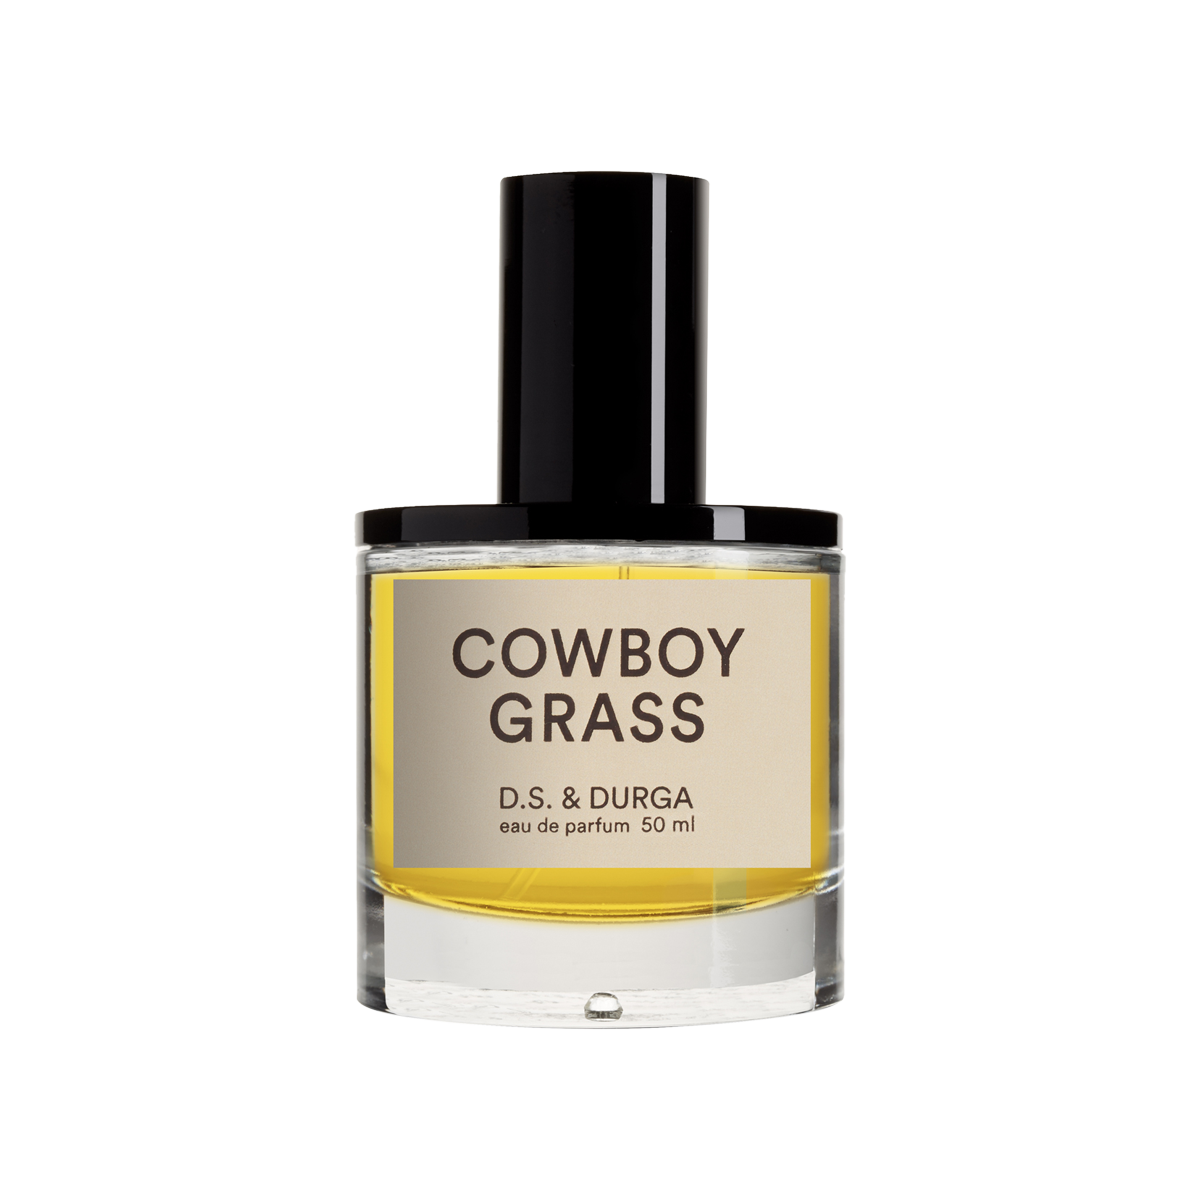 D.S. & DURGA - Cowboy Grass Eau de Parfum